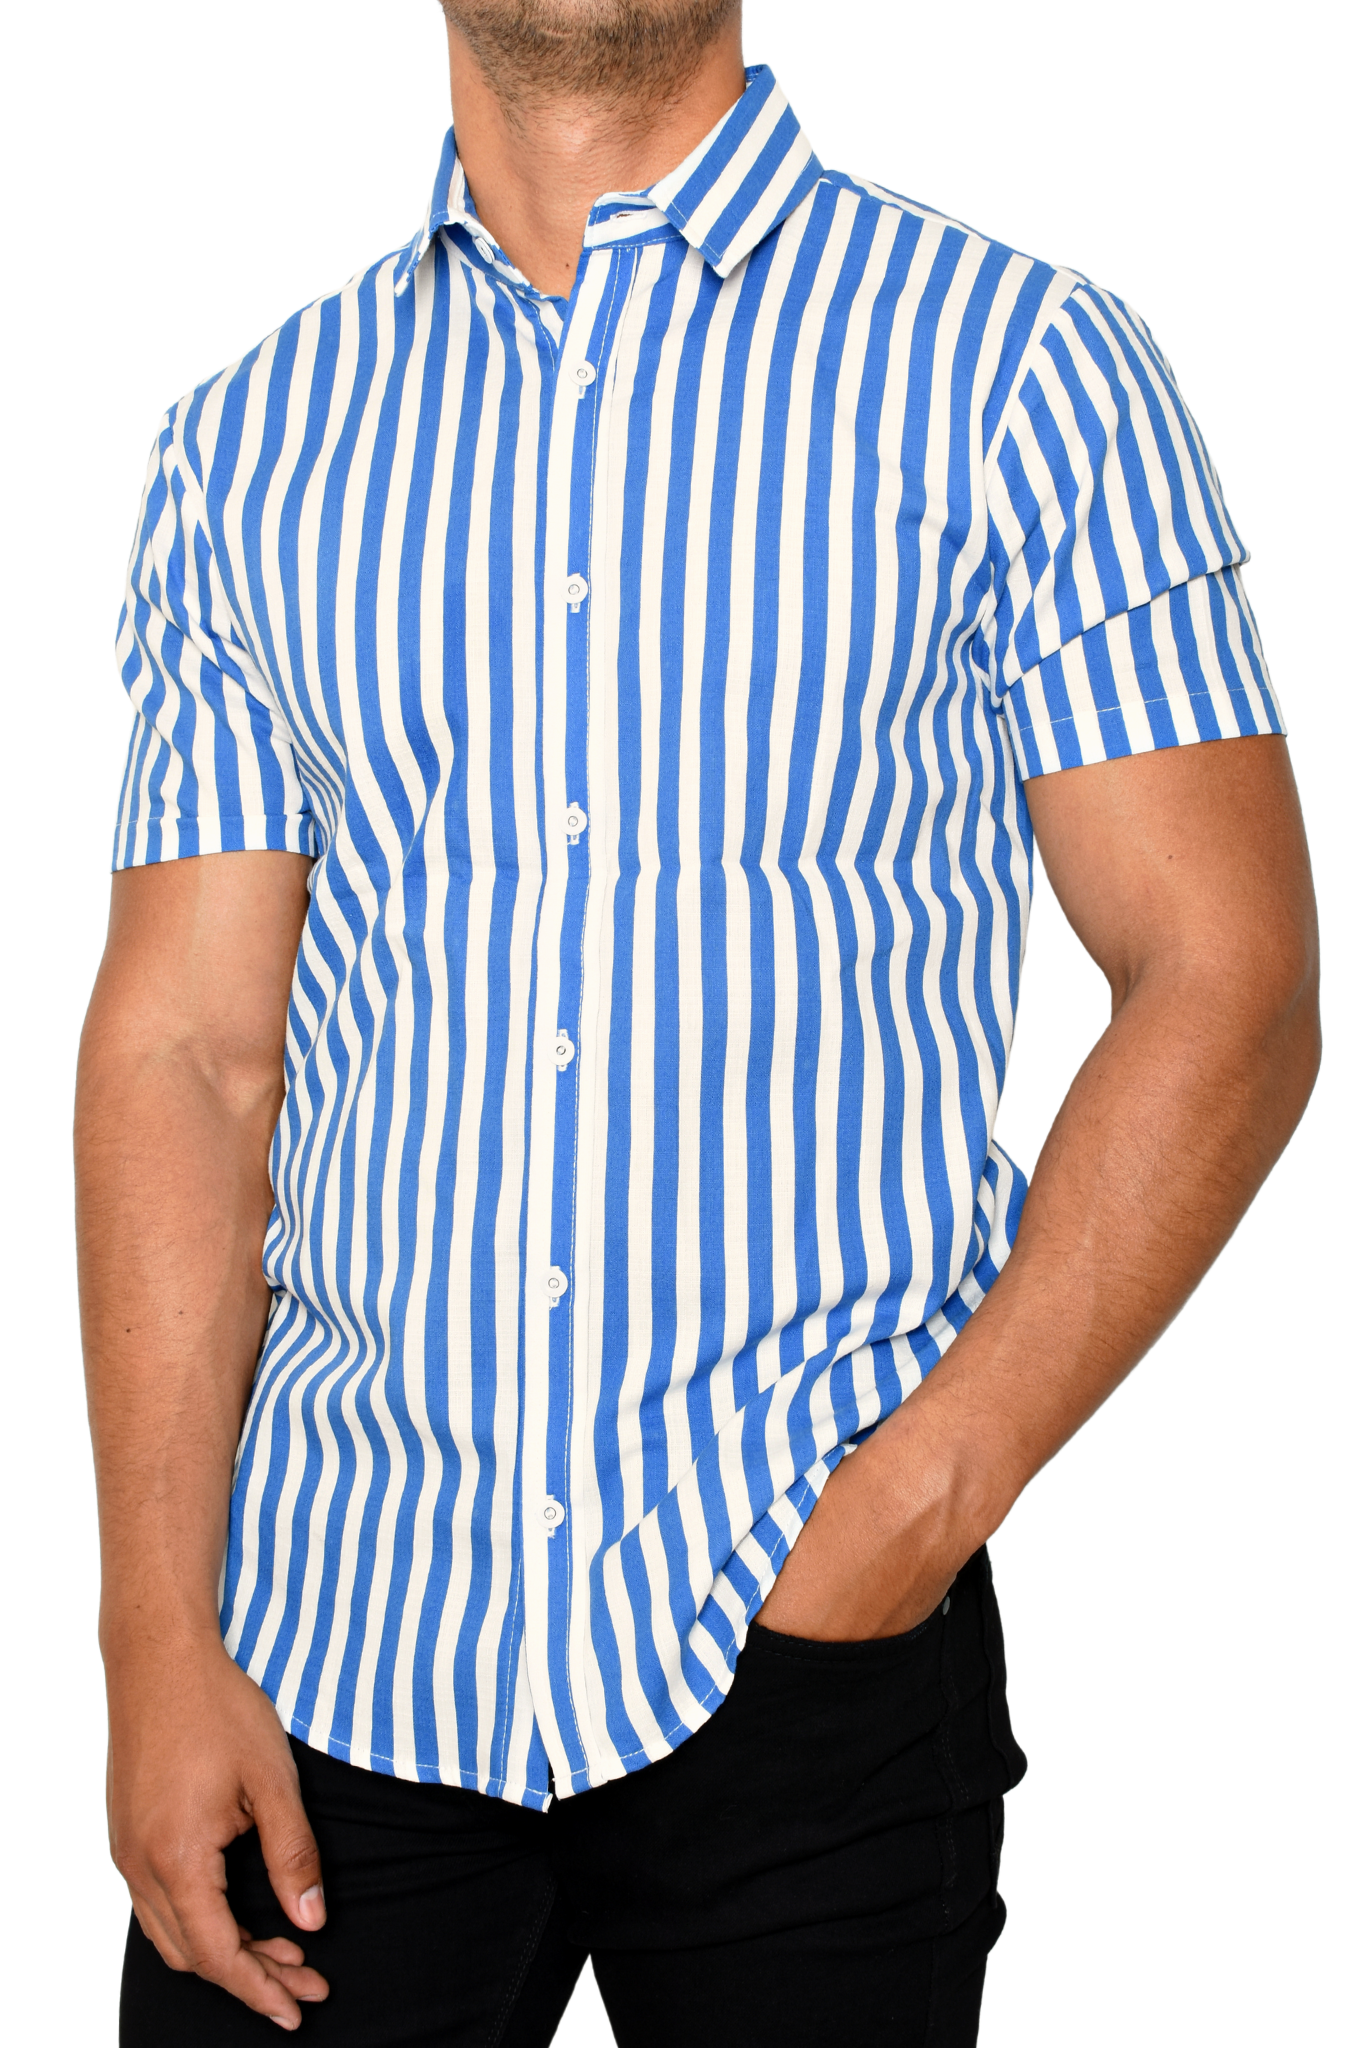 Camisa Rayas Blancas / Azul Cielo Manga Corta Tipo Lino